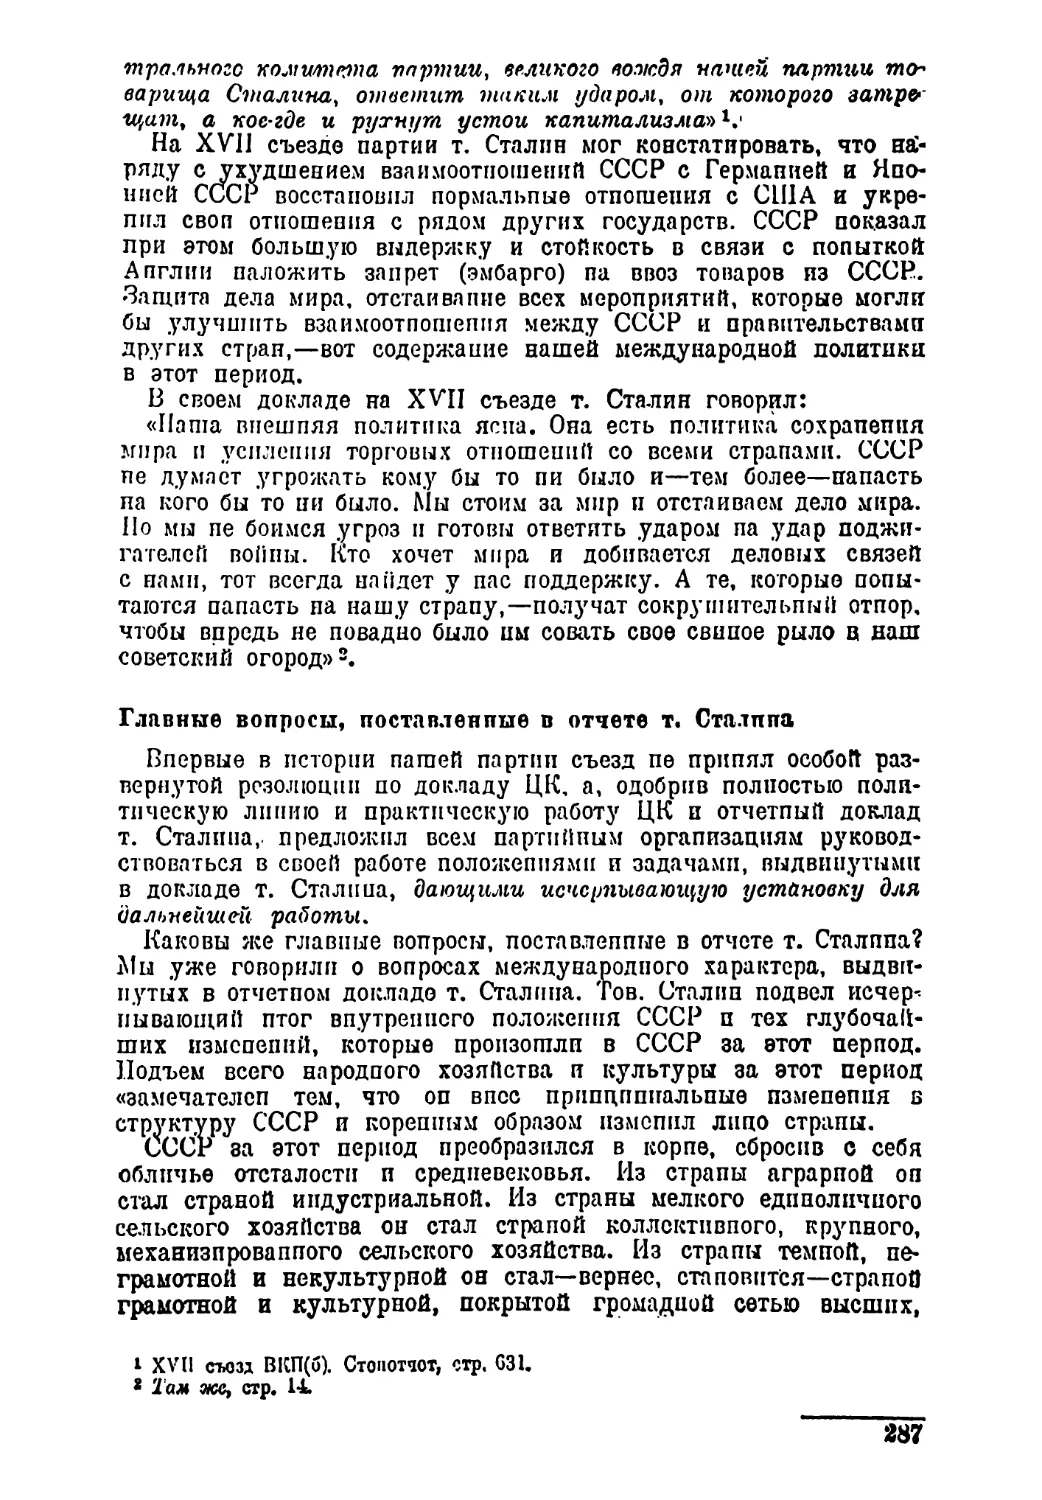 Главные вопросы, поставленные в отчете т. Сталина